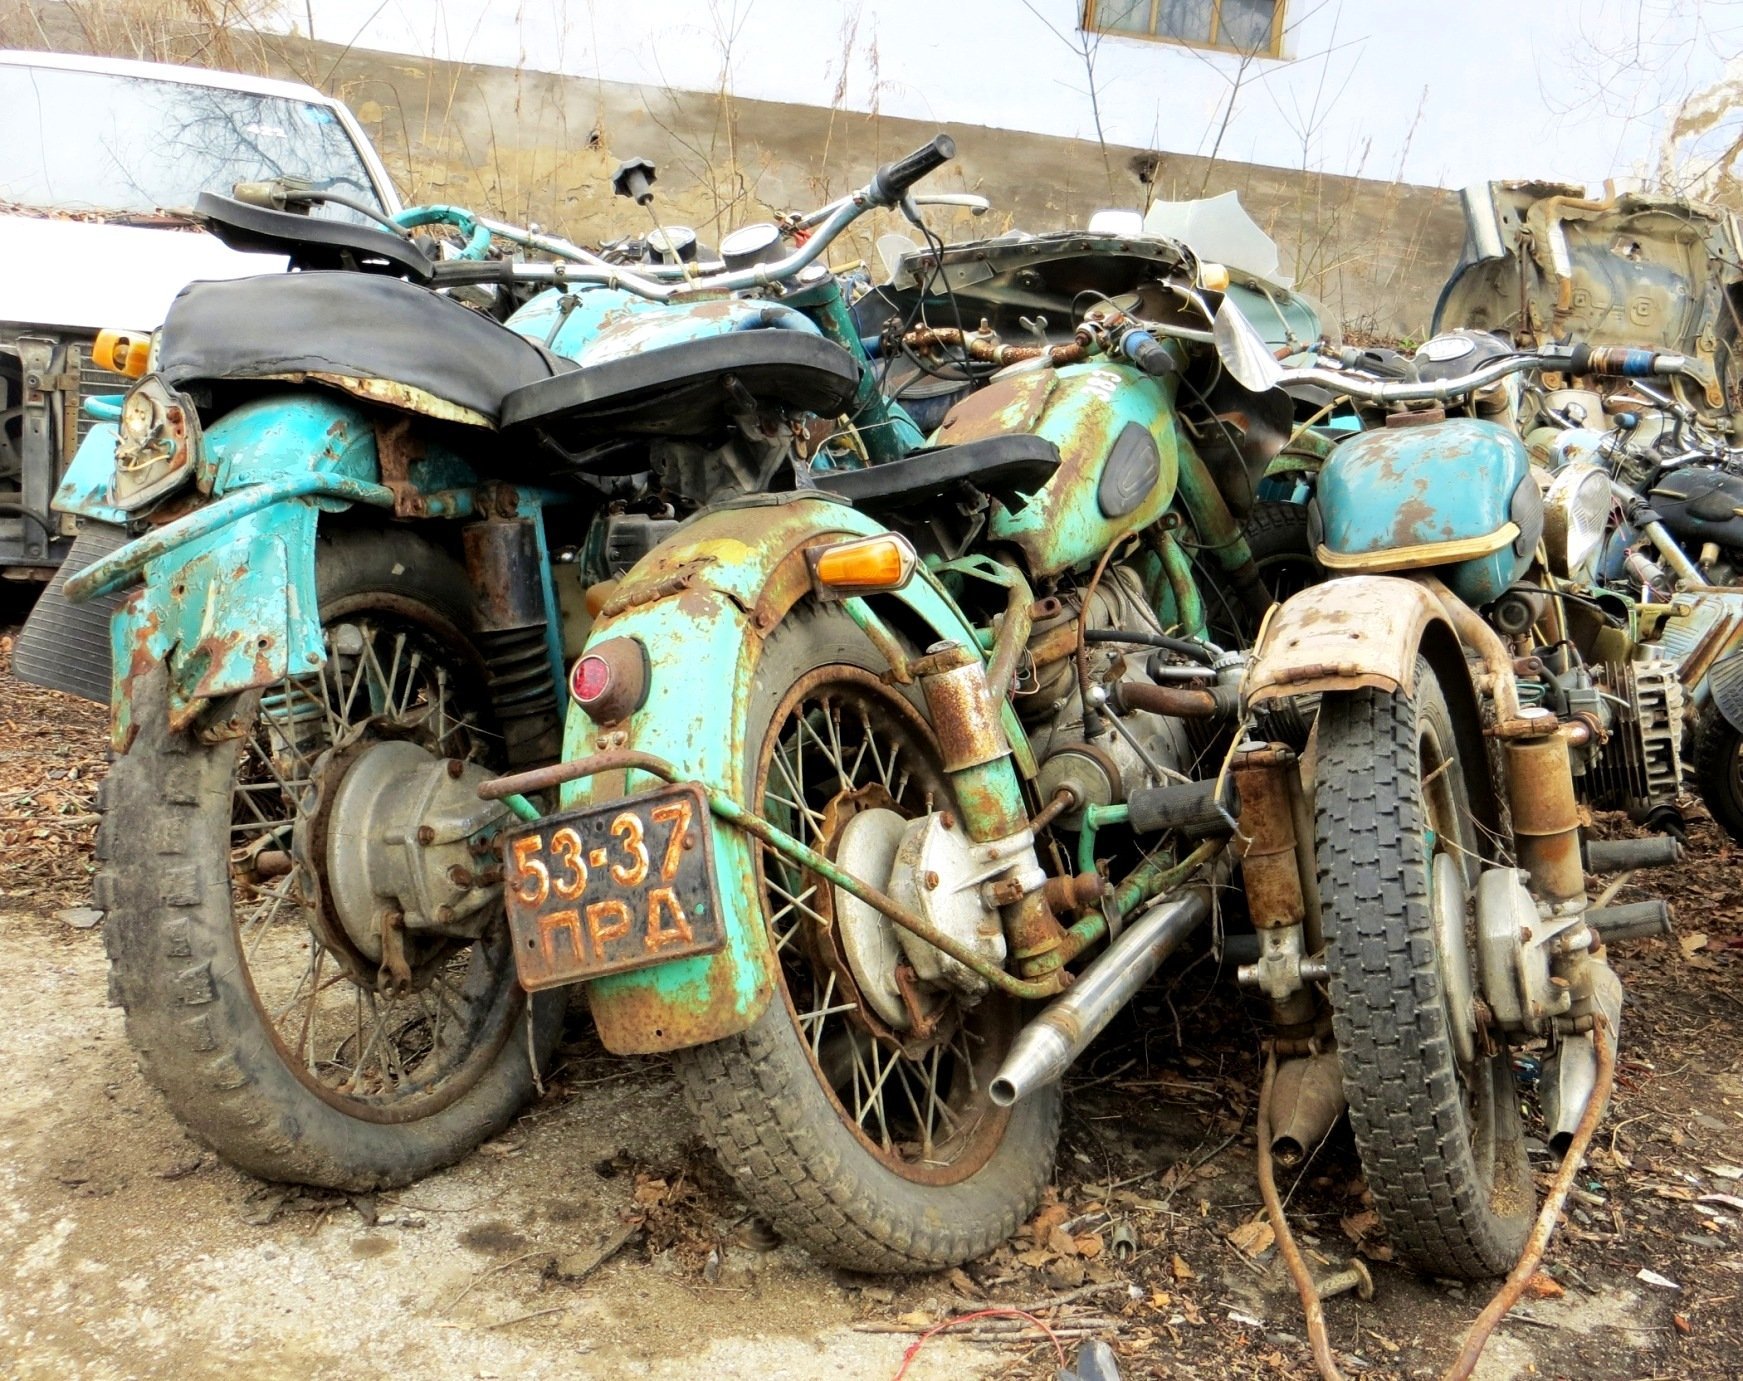 мотоциклы бу в москве и области